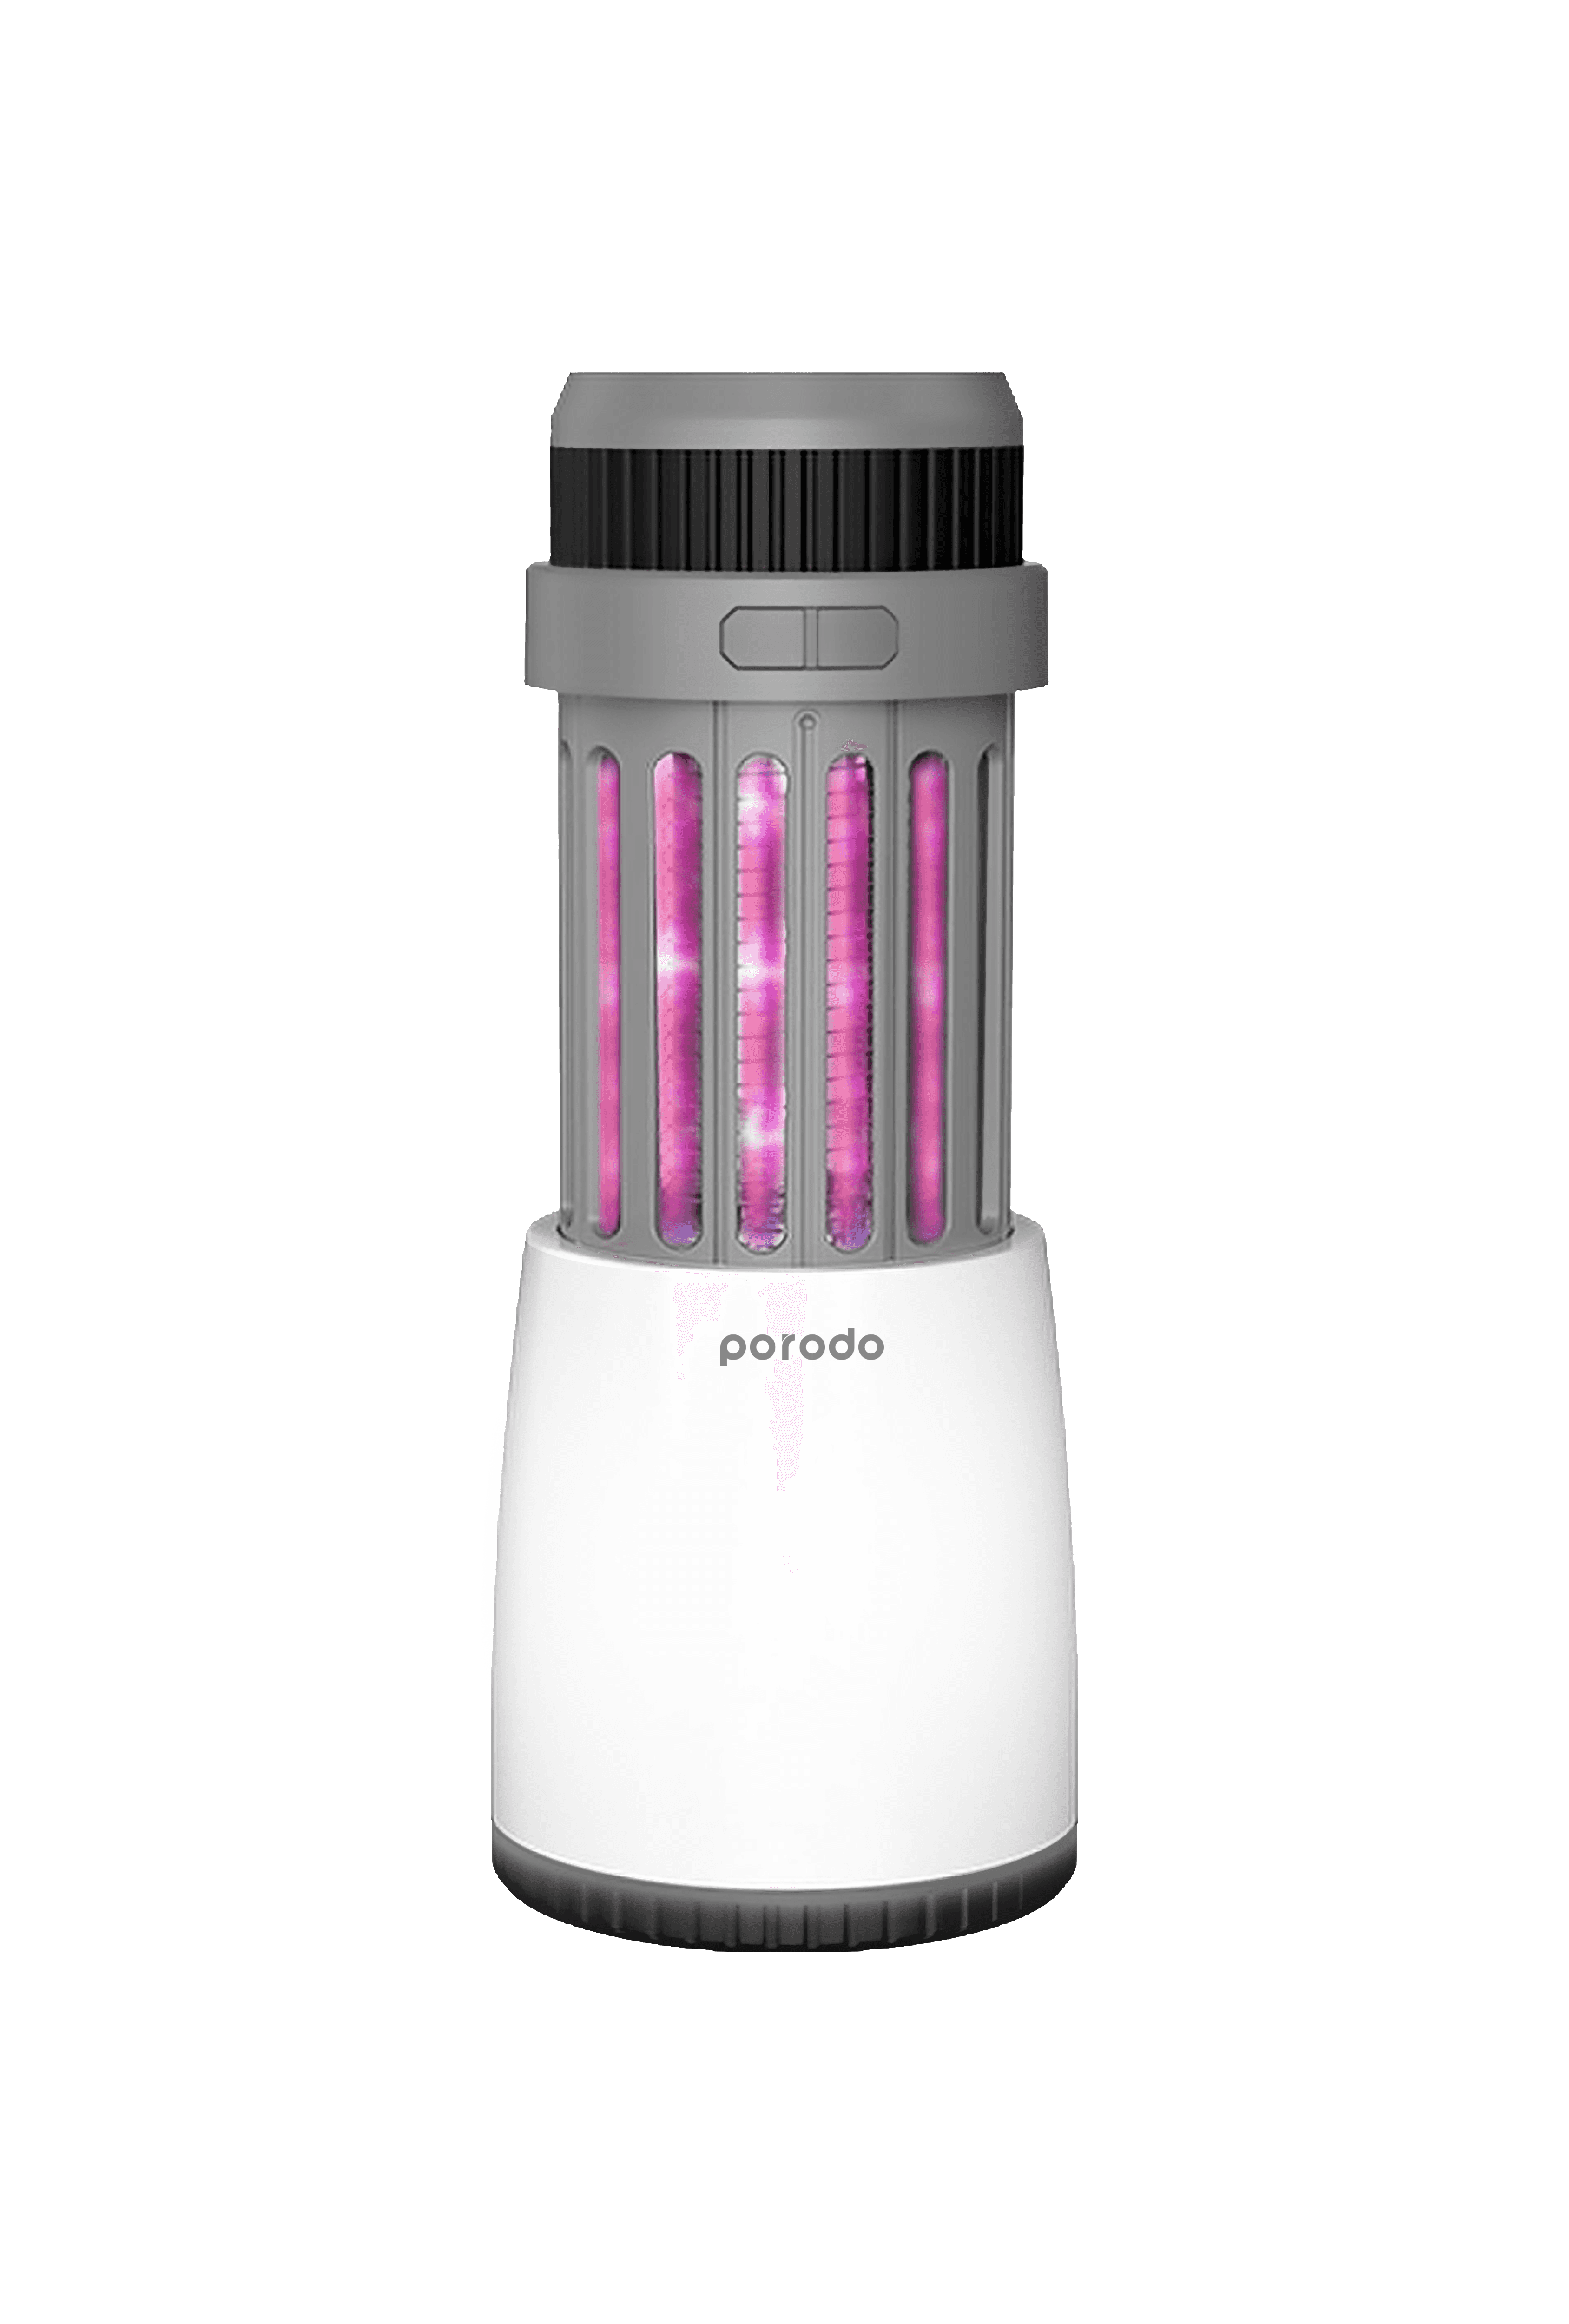 لمبة صاعق الناموس وقاتل البعوض اللاسلكي بورودو مع اضاءة مدمجة للرحلات 5 واط Porodo LifeStyle Outdoor Lamp with Mosquito Zapper